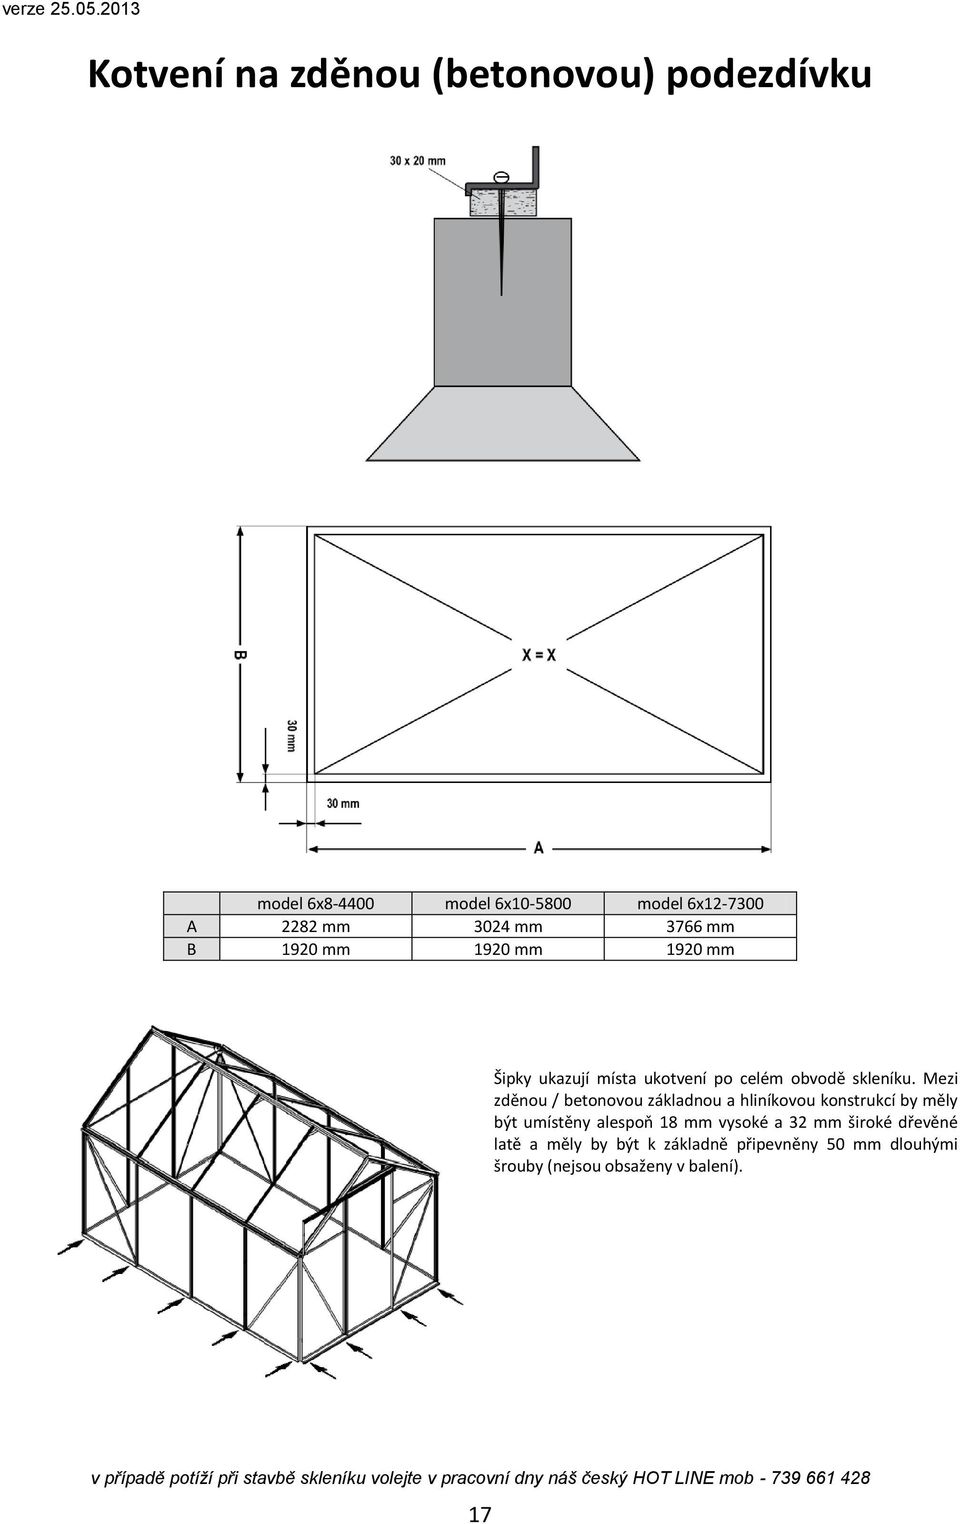 Mezi zděnou / betonovou základnou a hliníkovou konstrukcí by měly být umístěny alespoň 18 mm vysoké a